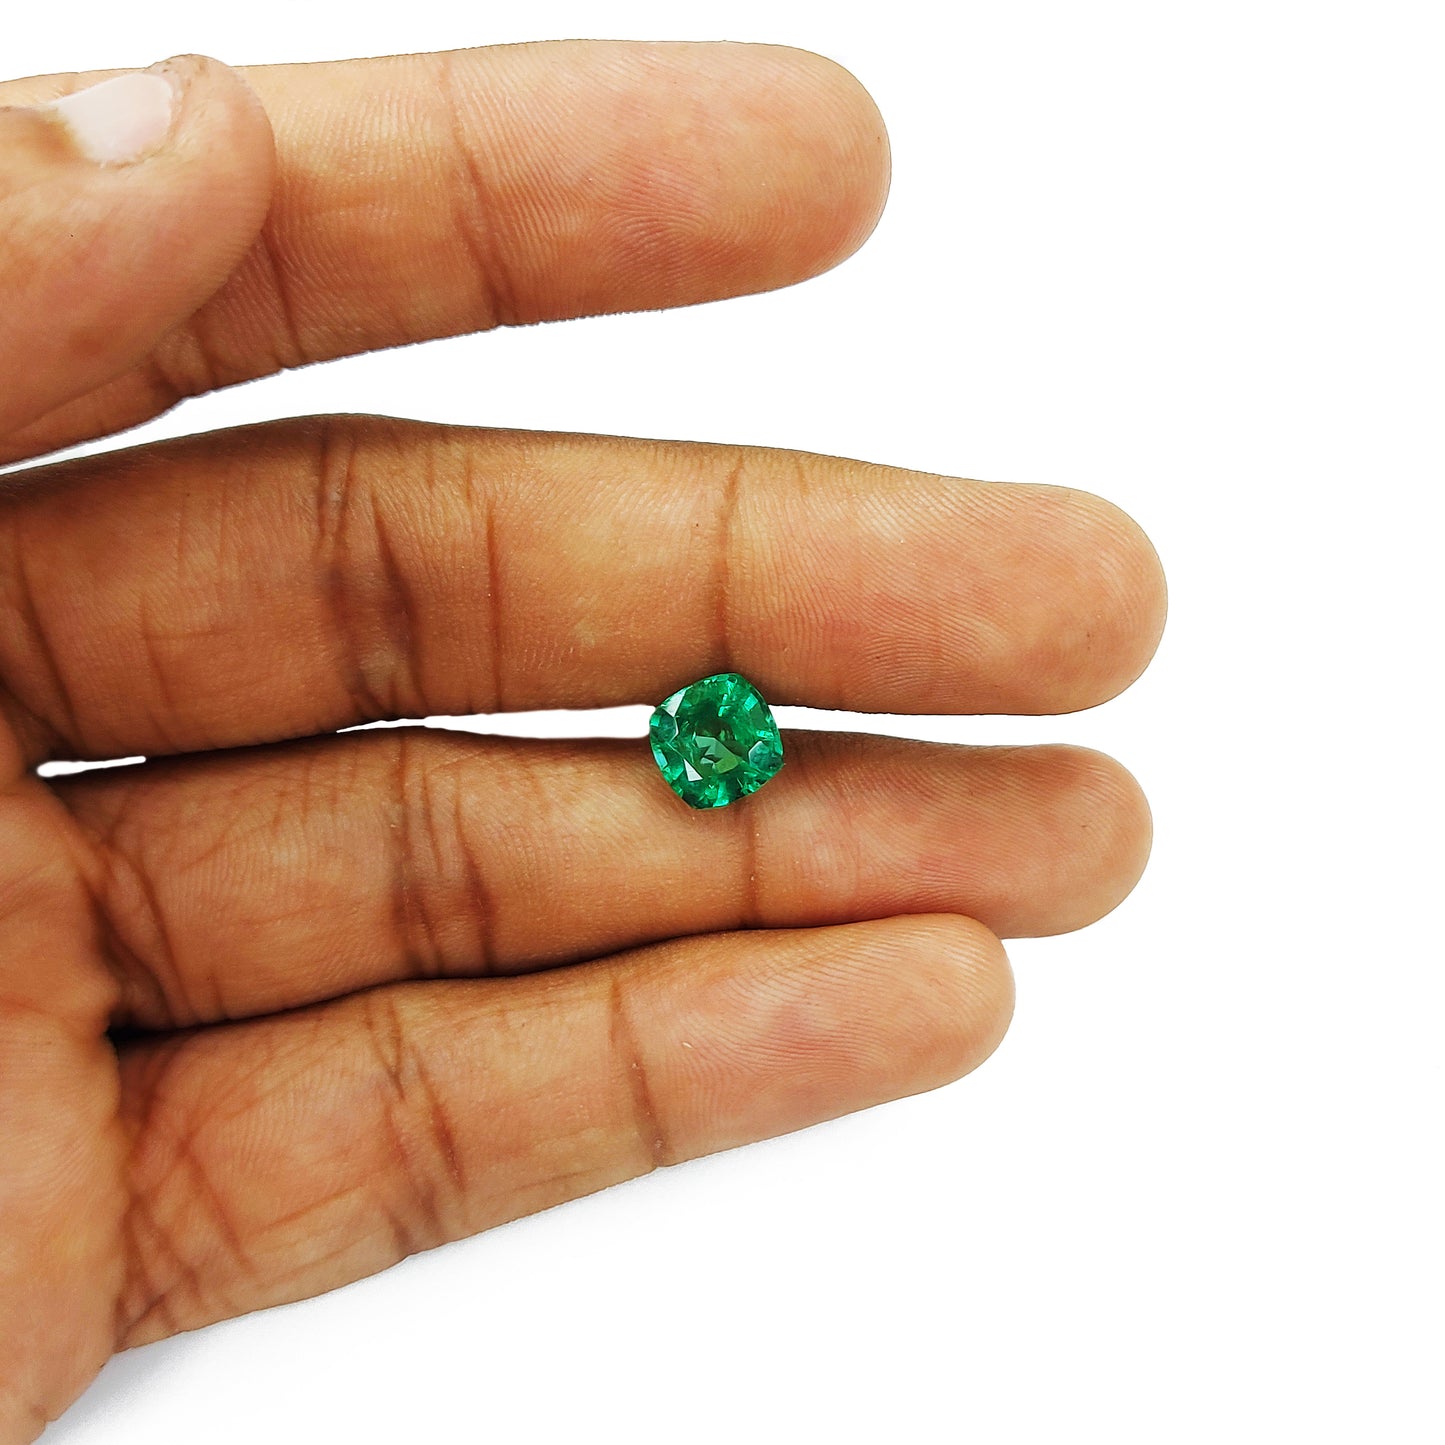 100% Natural Zambian Emerald Cushion | 2.25cts